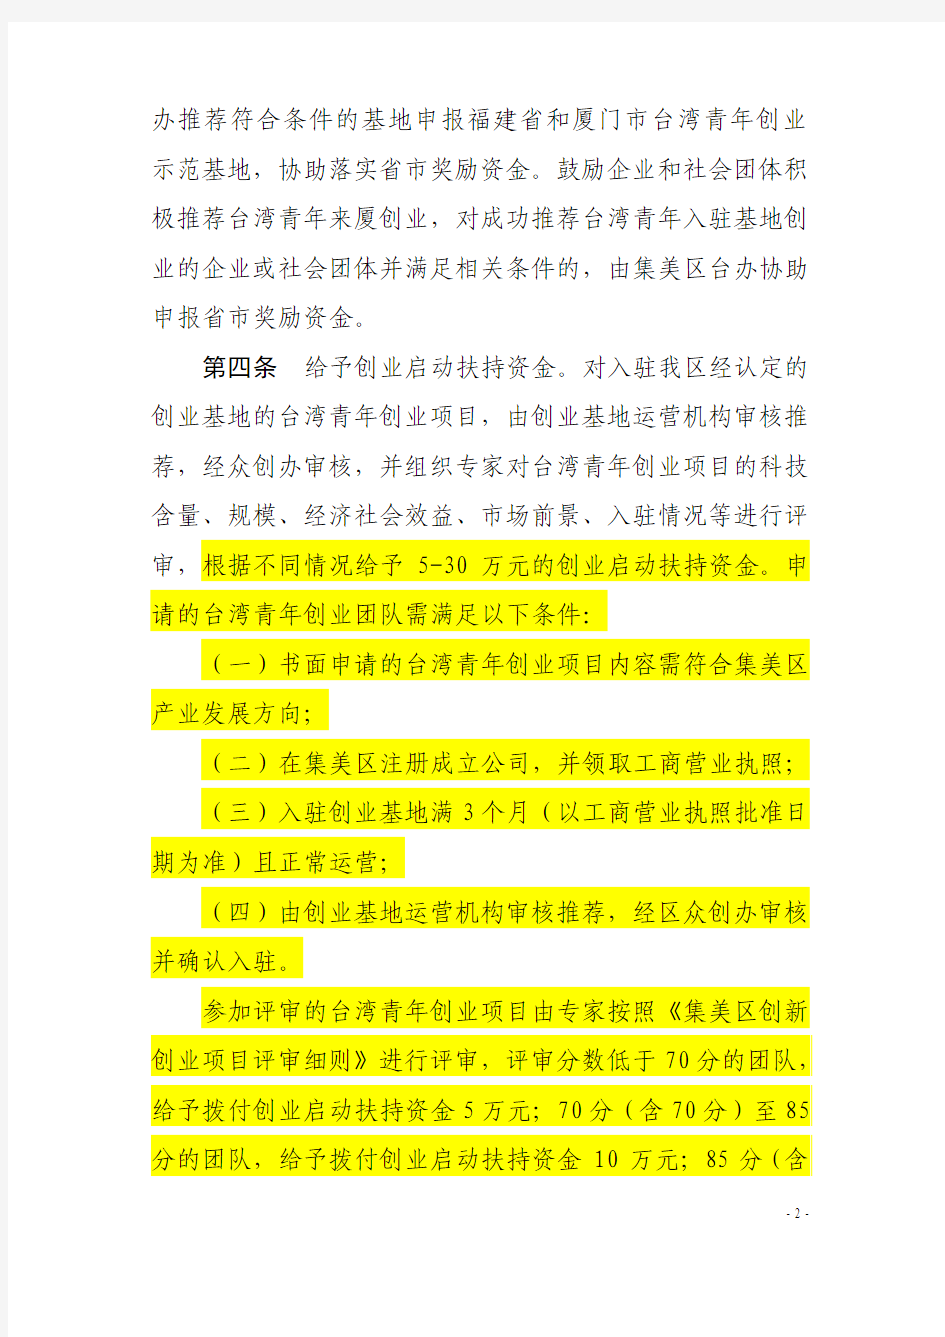 《集美区关于落实鼓励和支持台湾青年来厦创业就业政策的实施细则》